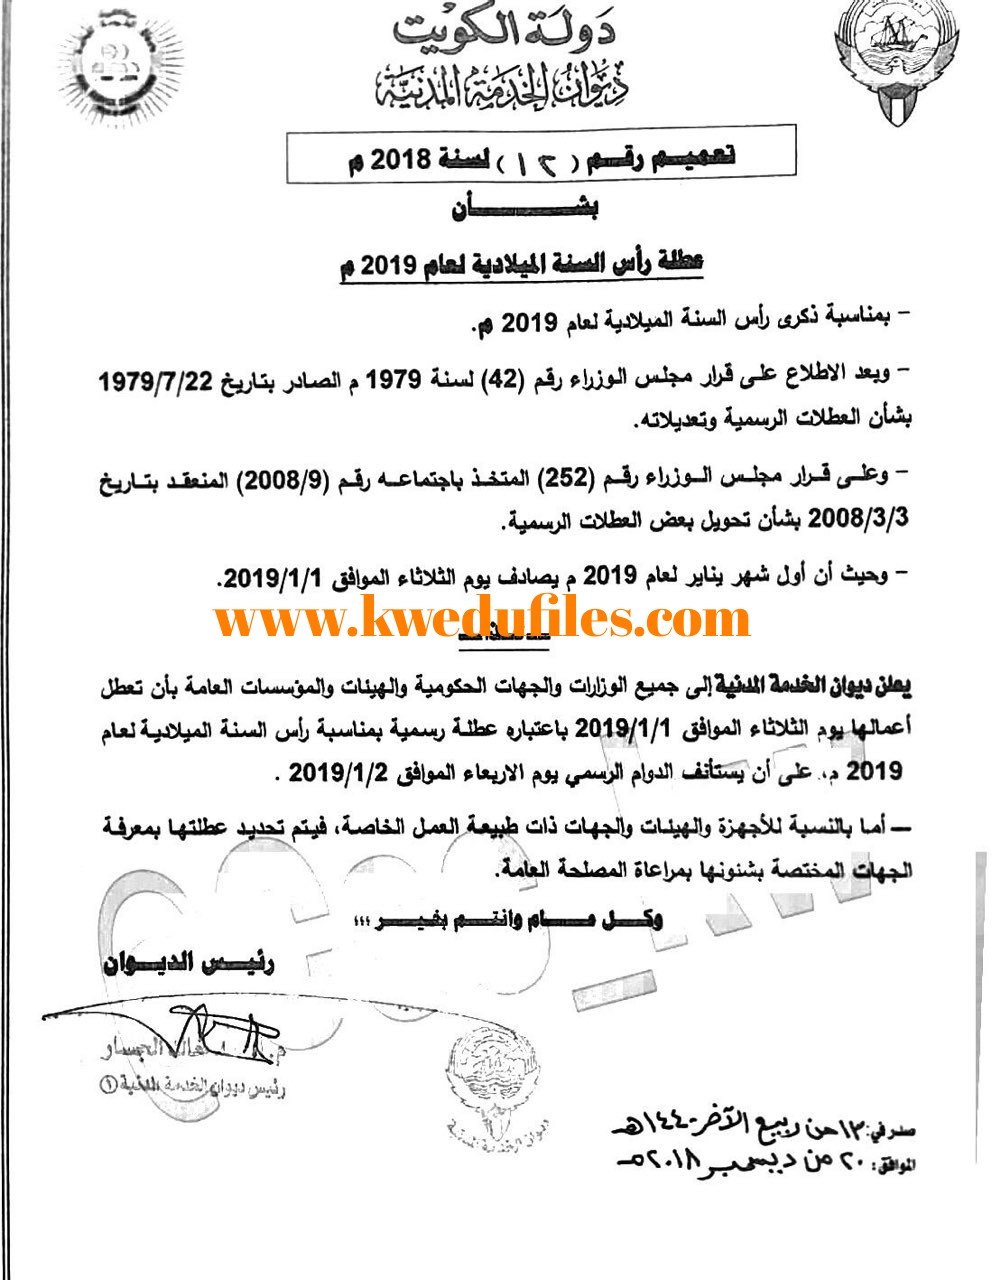 ديوان الخدمة المدنية يعلن بأن يوم الثلاثاء الموافق 1 1 عطلة رسمية أخبار غير ذلك الفصل الأول ملفات الكويت التعليمية